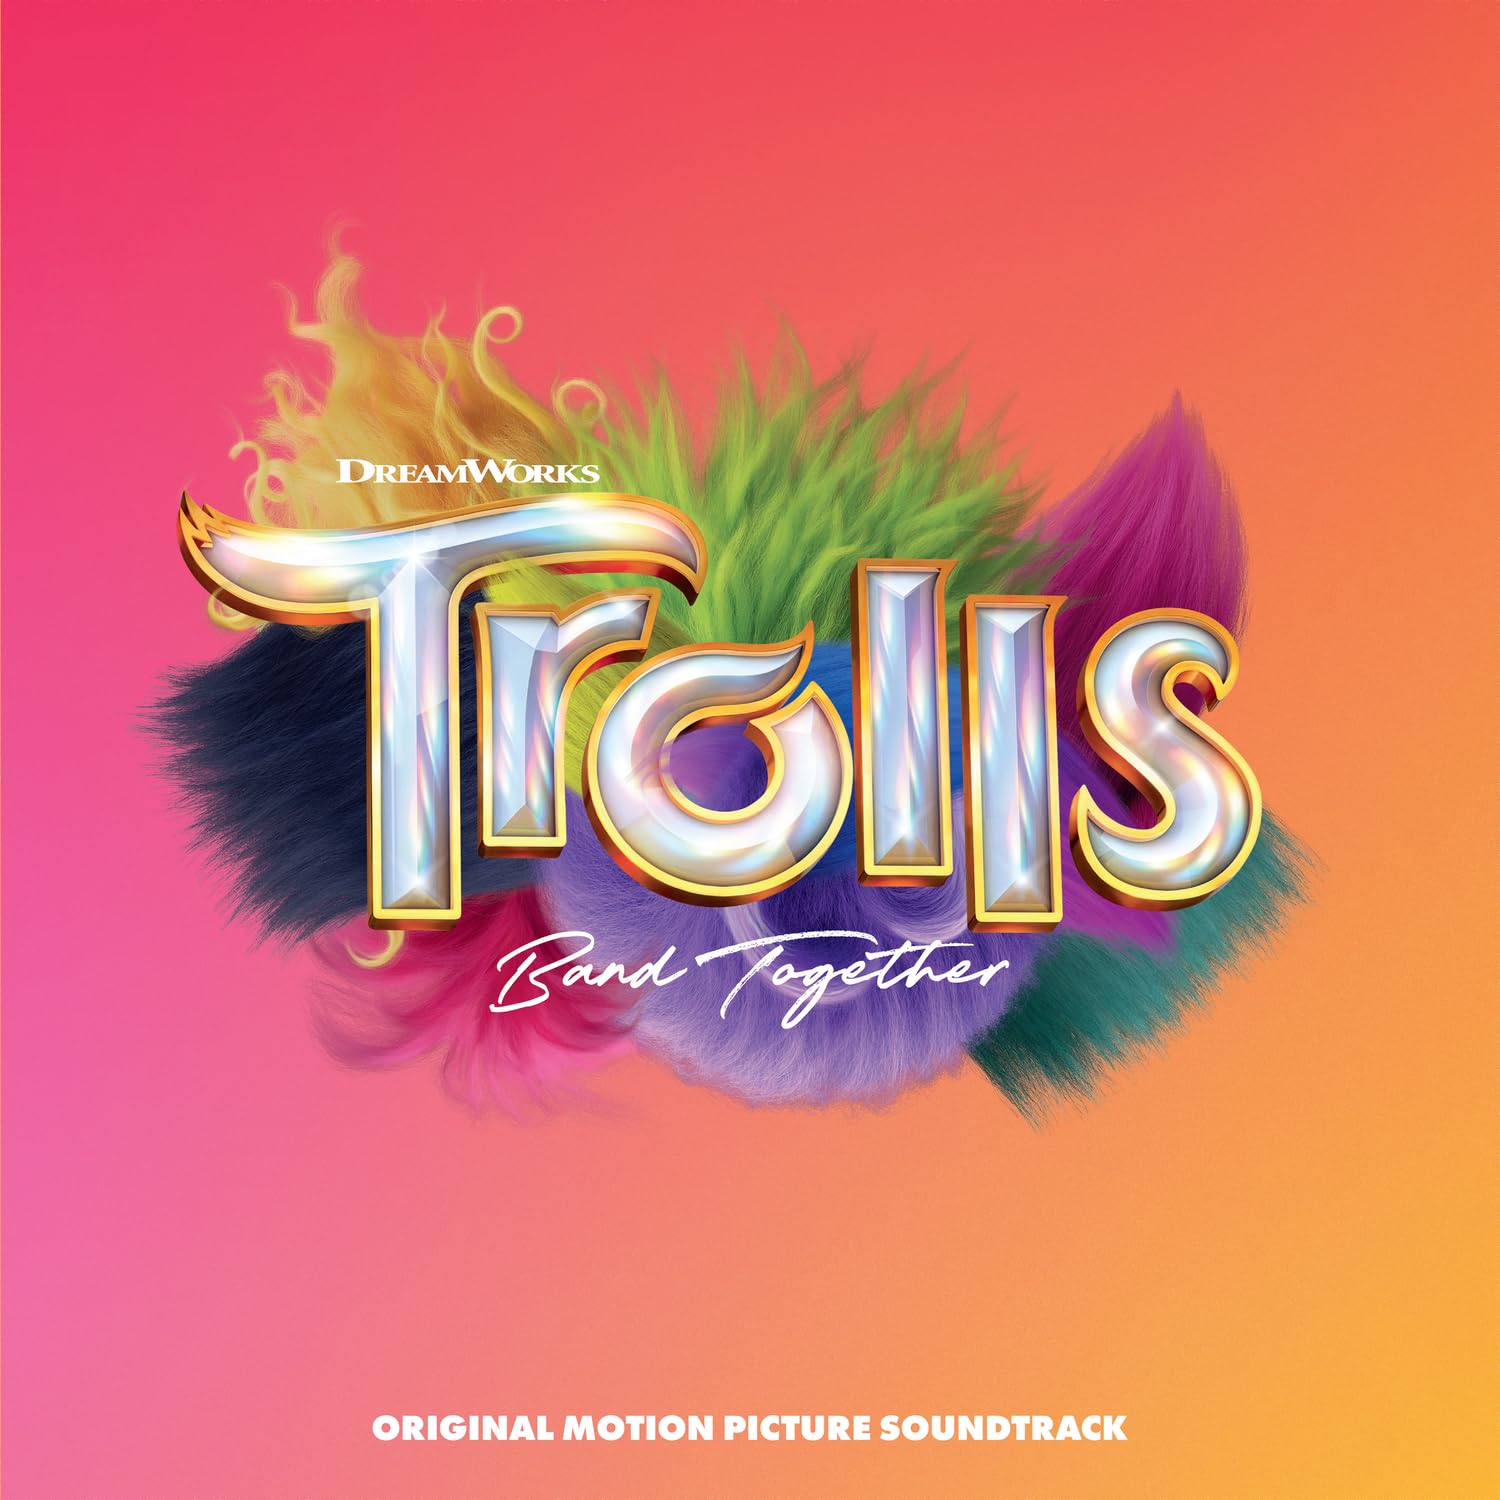 Trolls Band Together (Original Motion Picture Soundtrack) (Vinyl LP)